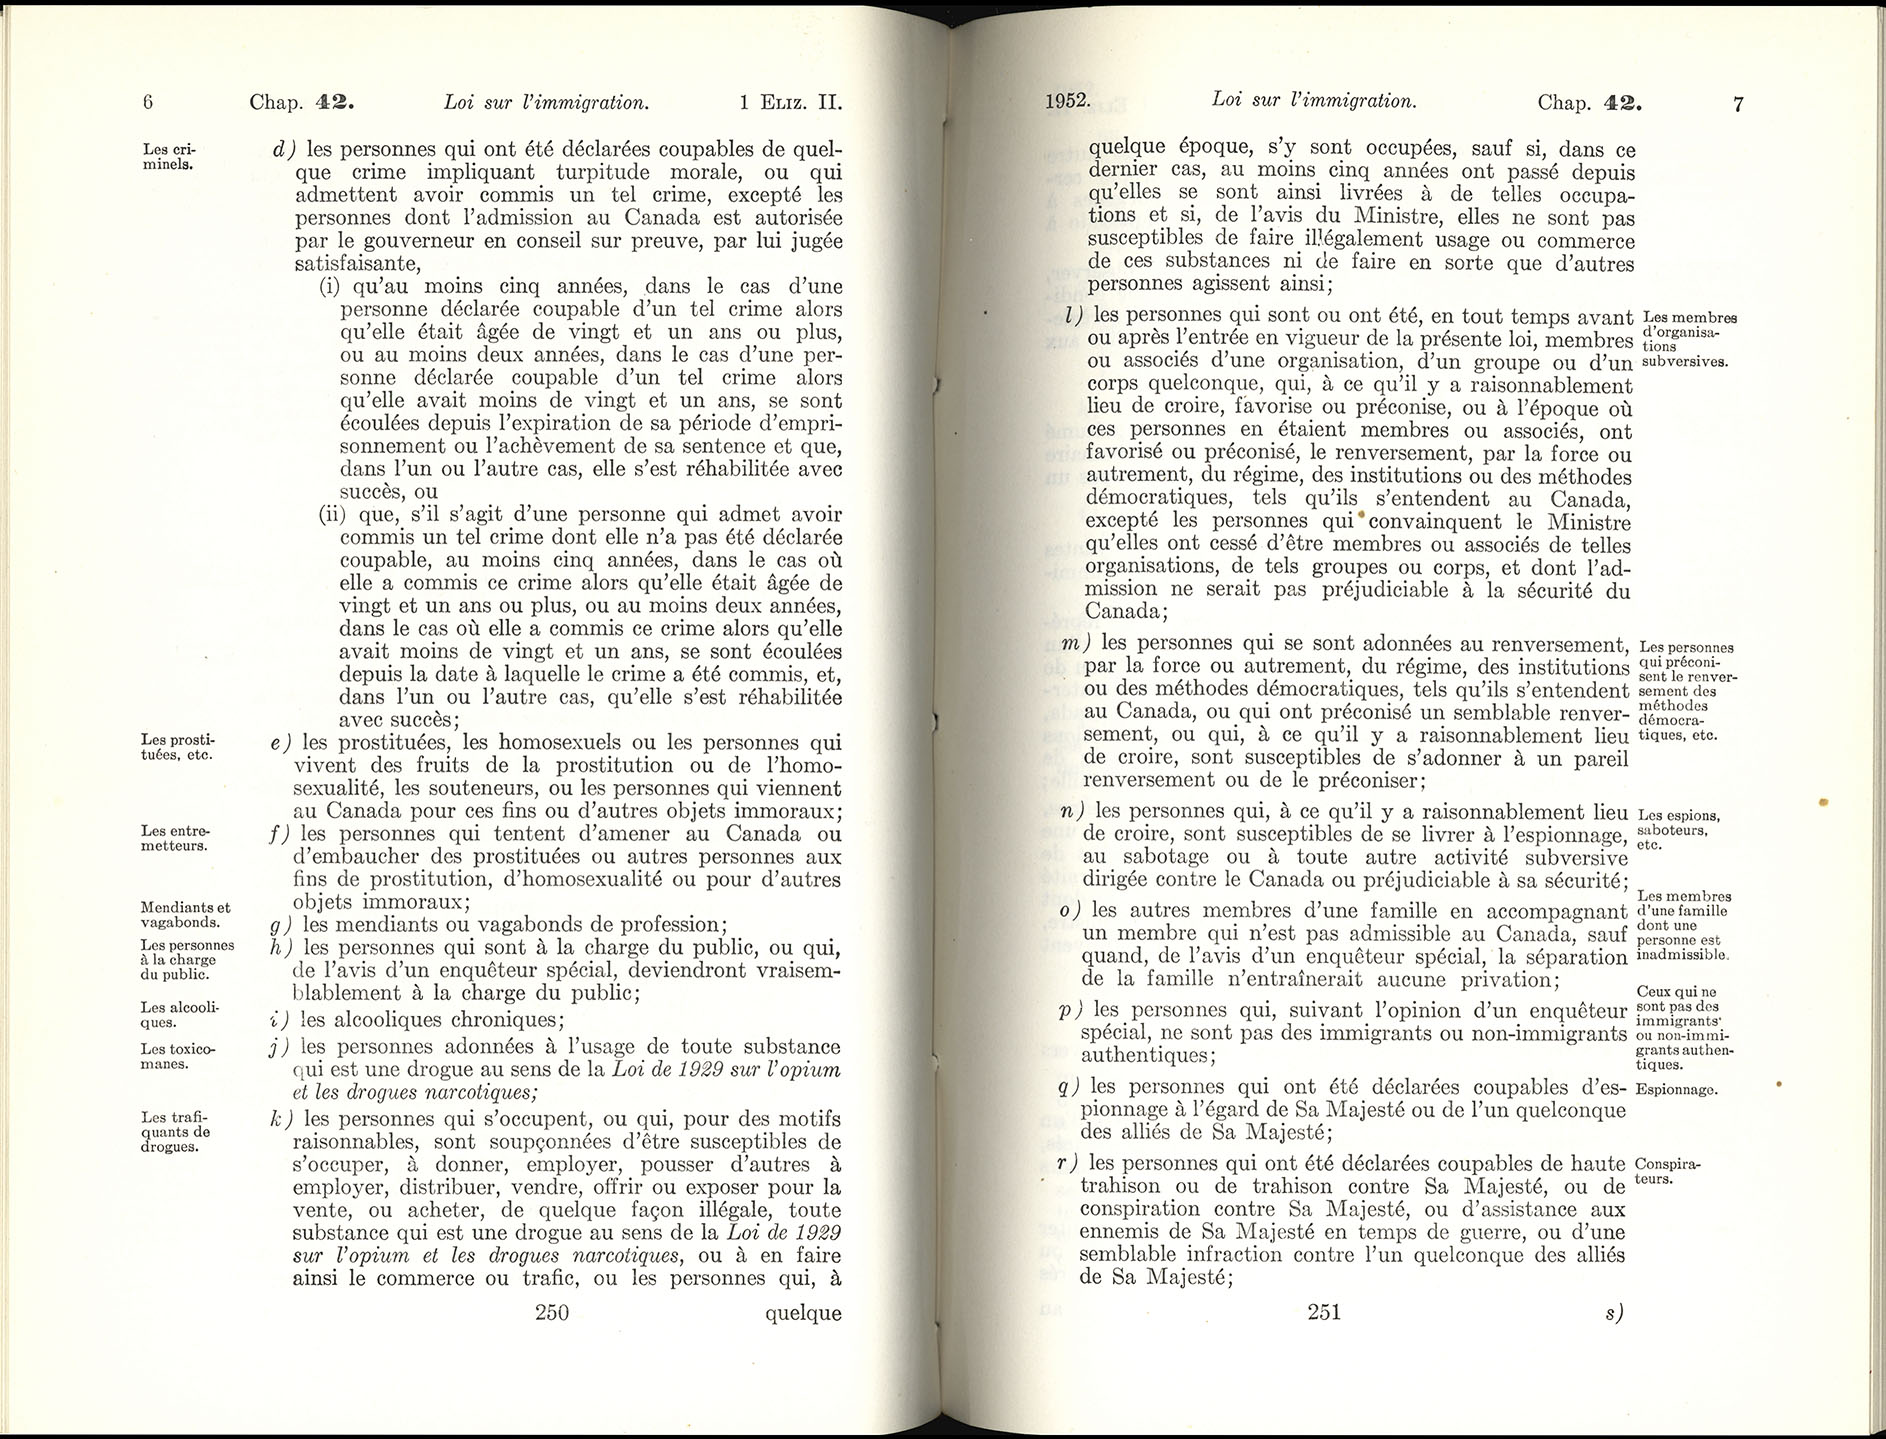 Chap 42 Page 250, 251 Loi sur l’immigration, 1952